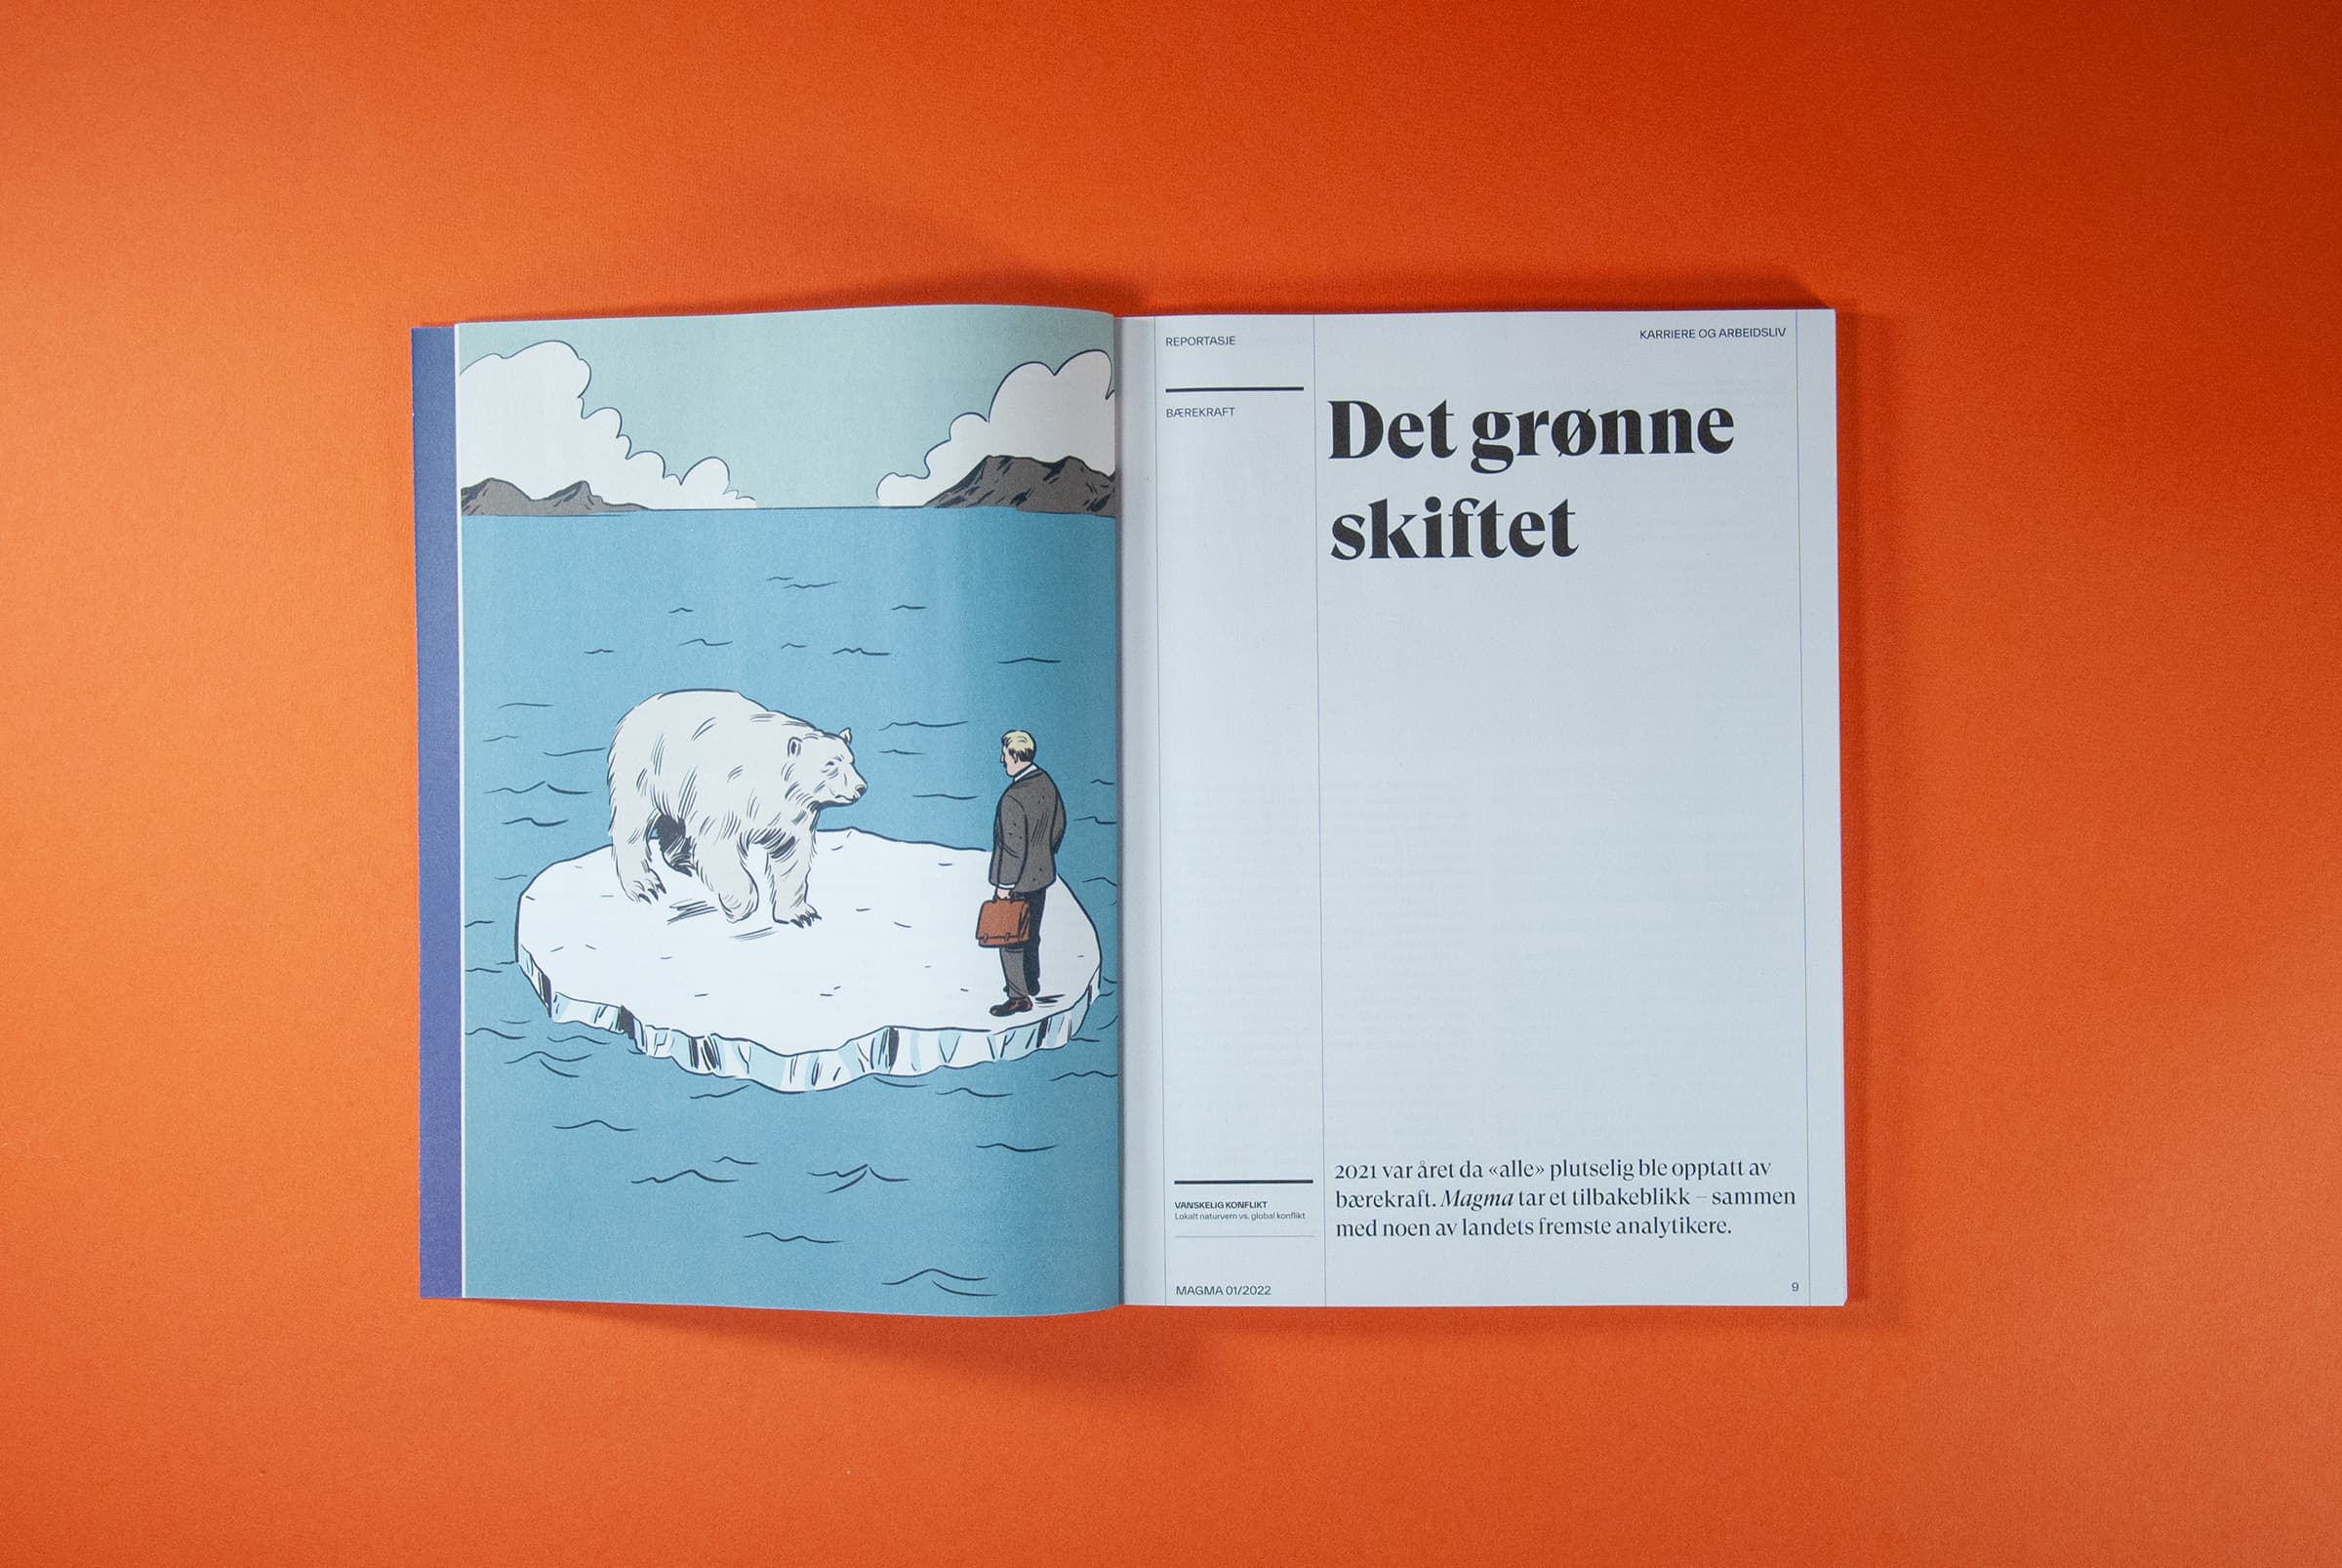 Bildet viser et oppslag av hvordan en ny del i tidsskriftet kan se ut. På venstre side er det en illustrasjon av en isbjørn og en mann på et isflak. På høyre side står det "Det grønne skiftet".